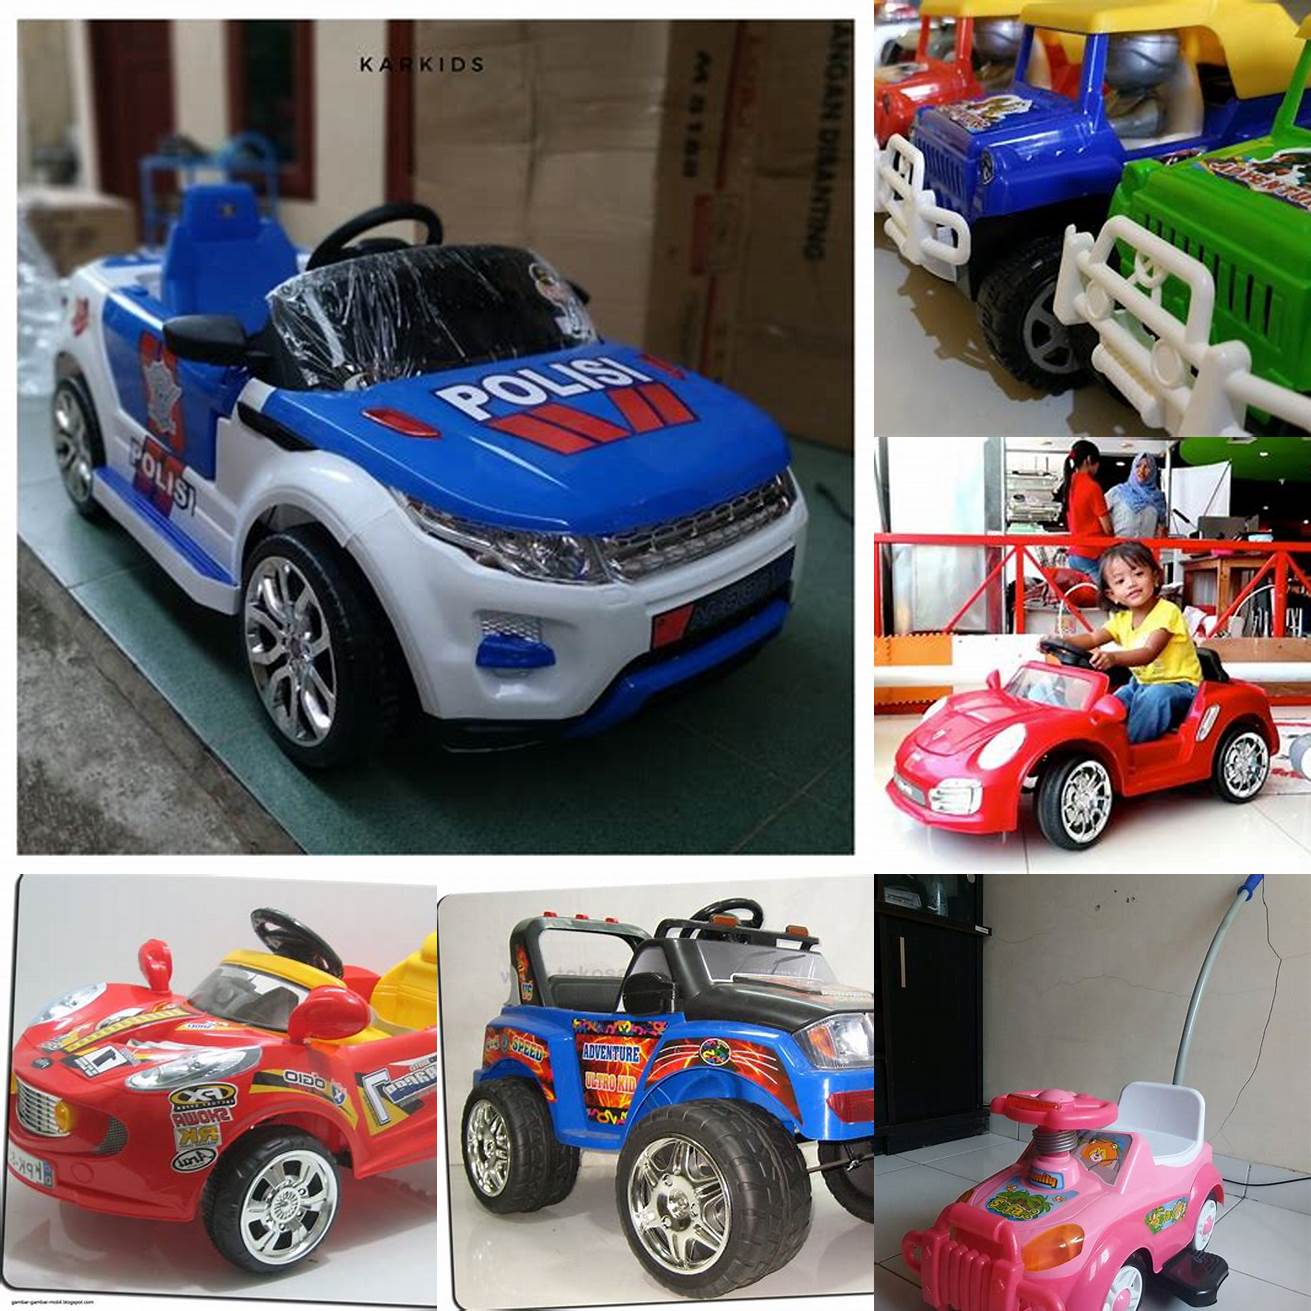 Mobil Mobilan Anak Bertema Karakter